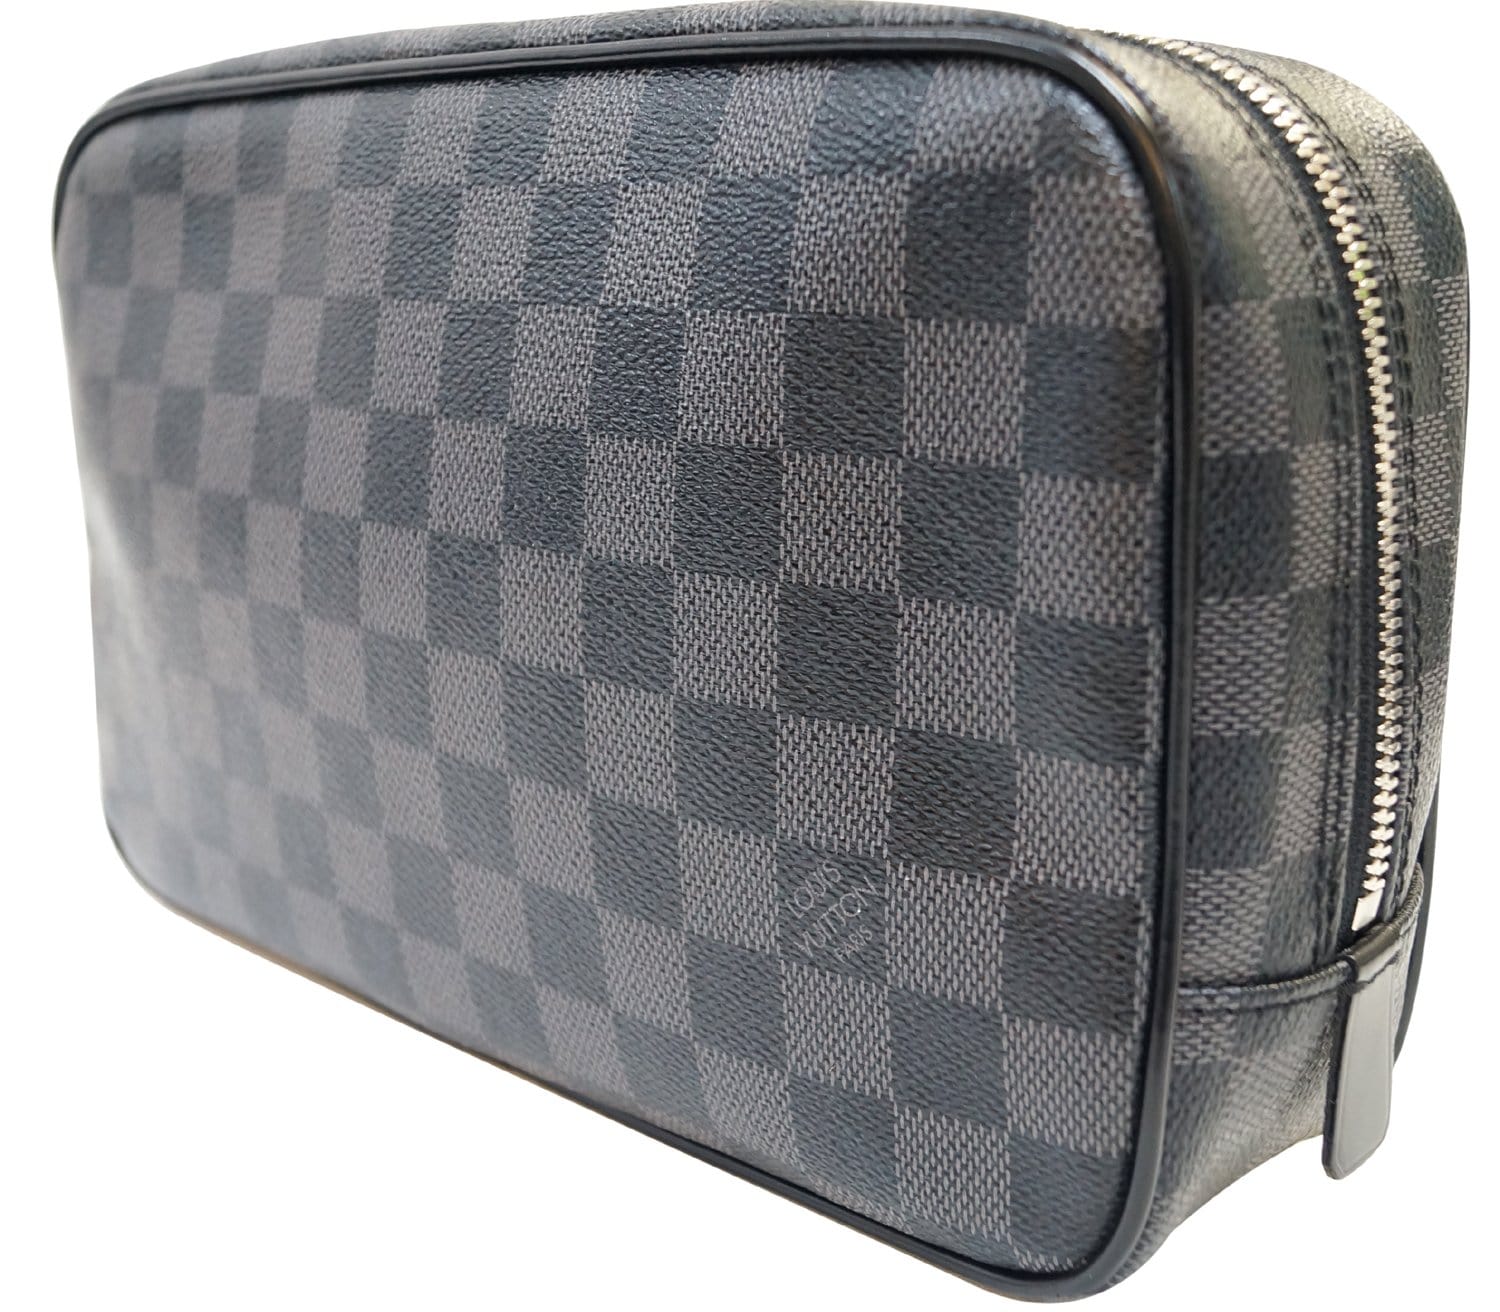 Louis Vuitton travel pouch clutch bag LOUIS VUITTON True suspense double  N41419 Damier Graphite